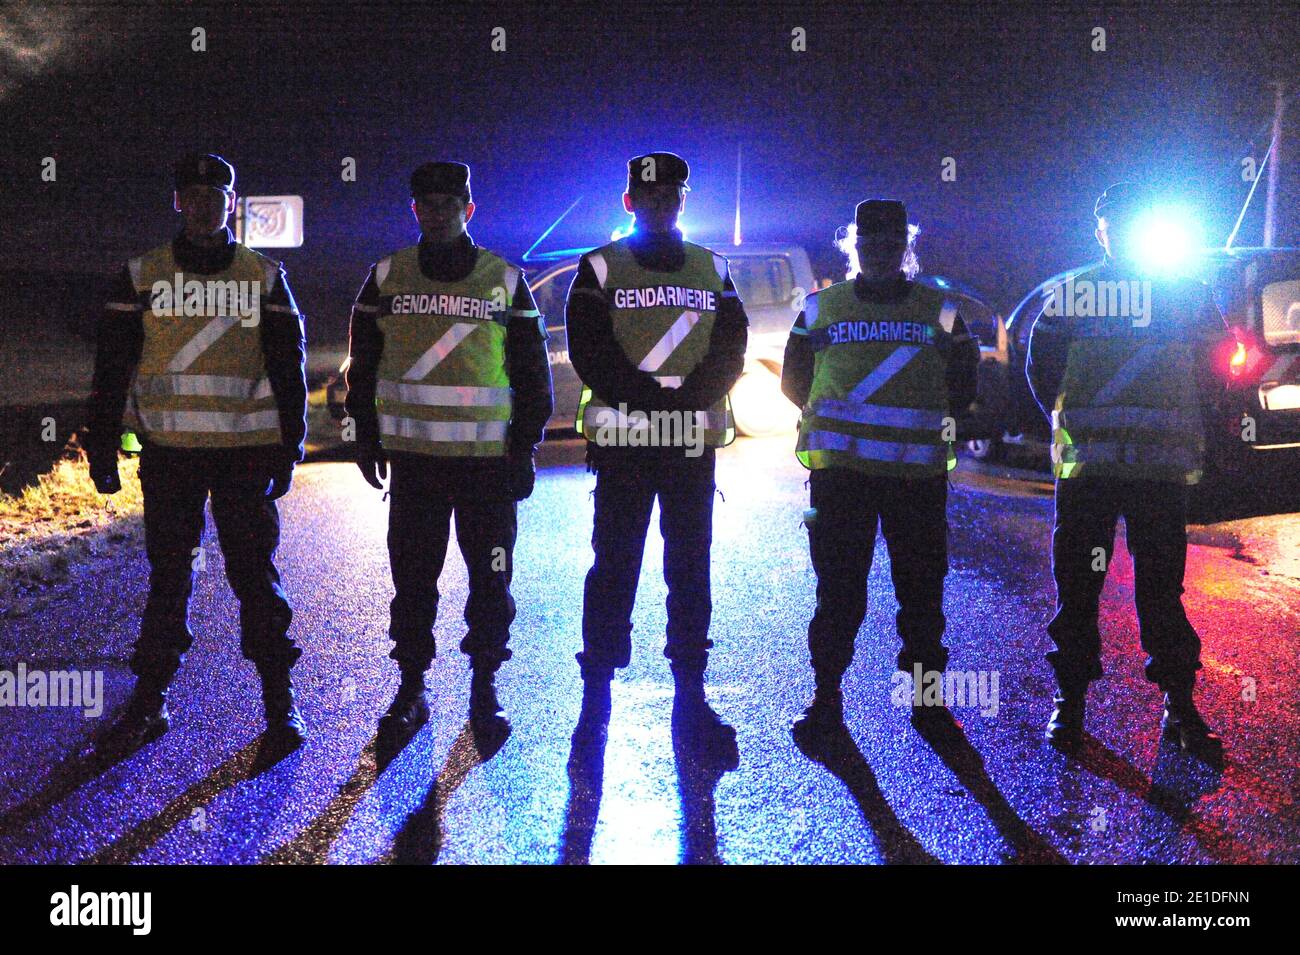 Reconstitution des degradations commises contre une ligne TGV de l'Est dans l'affaire dite de Tarnac, a Dhuisy, Seine-et-Marne, France dans la nuit du 13 au 14 janvier 2011. Dans la nuit du 7 au 8 novembre 2008, Julien Coupat conduit les policiers, qui le filaient en Seine-et-Marne, a proximite de la ligne du TGV Est, ou a lieu l’ un des quatre sabotages de la nuit. Il est en compagnie d’Yildune Levy et il cherche a dejouer la surveillance policiere. La filature commence a 18 h 25 au niveau de l’autoroute A4. Le couple emprunte les departementales D81 et D845, autour de Dhuisy. Leur Mercedes e Stock Photo